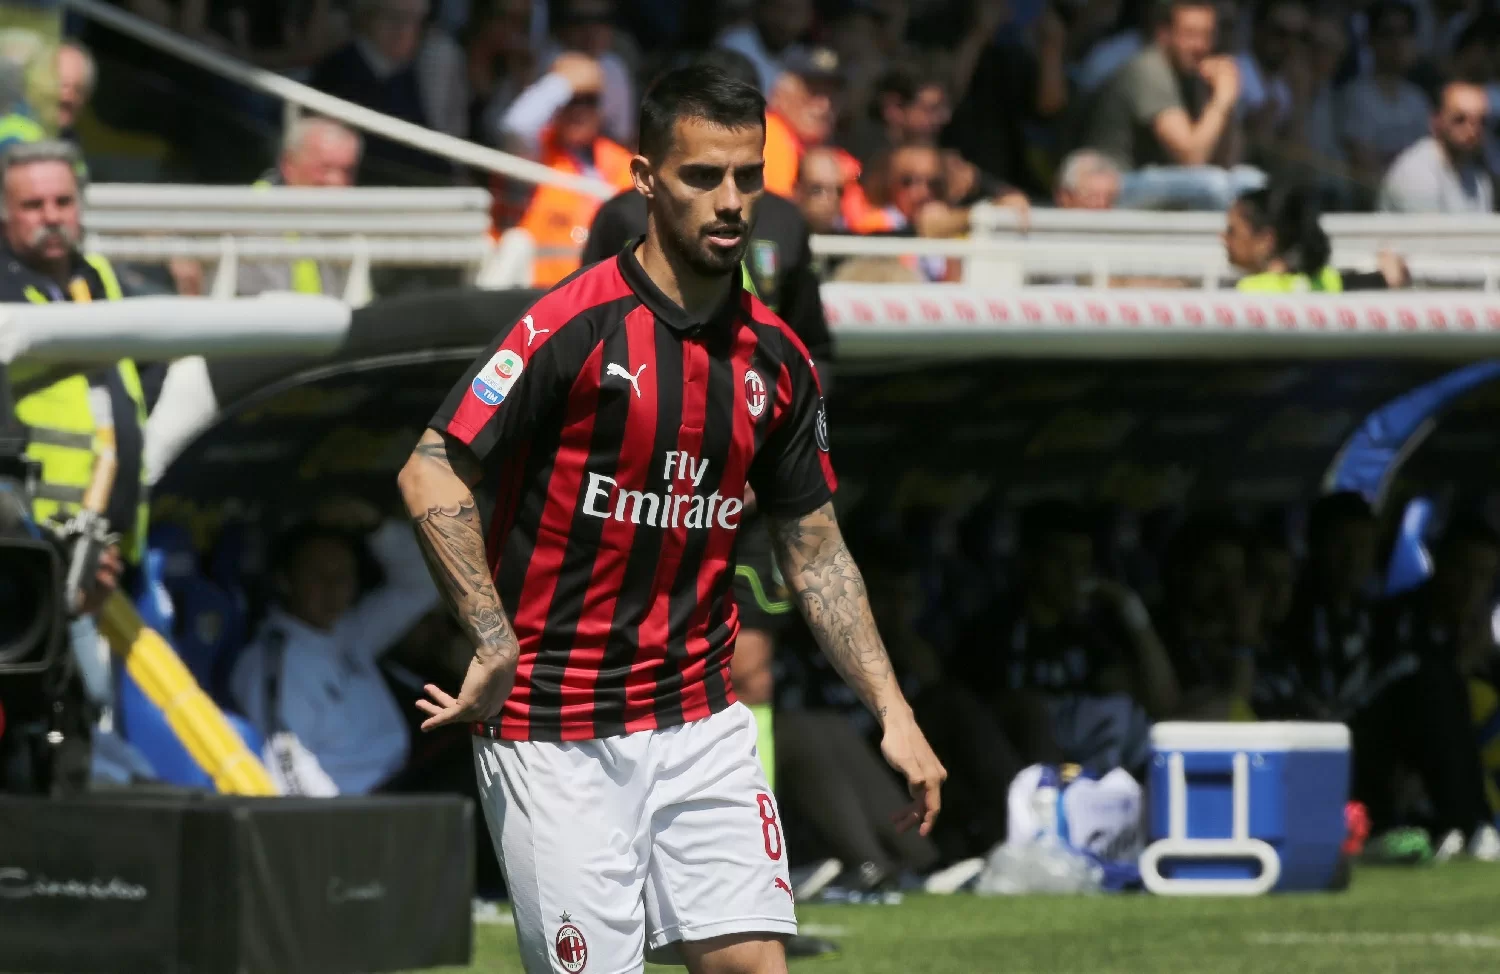 Calciomercato Milan – La Roma non molla Suso, Cutrone non convinto del Wolverhampton